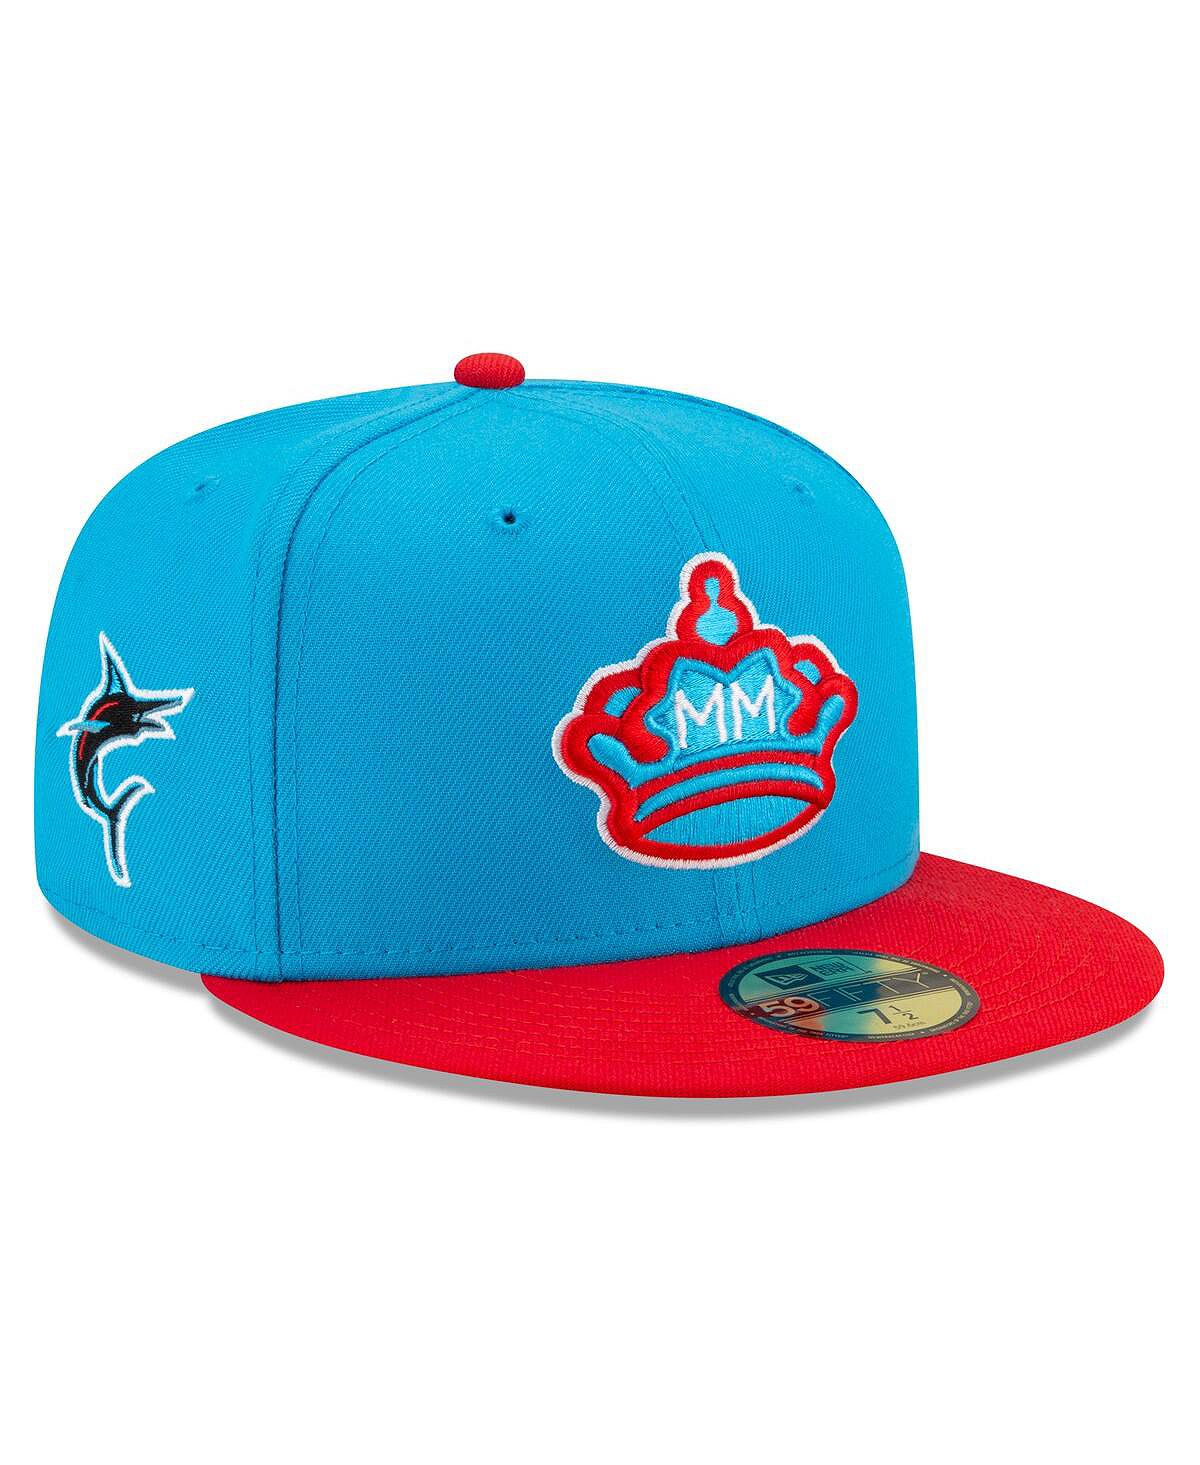 Мужская синяя, красная приталенная шляпа Miami Marlins City Connect 59FIFTY New Era